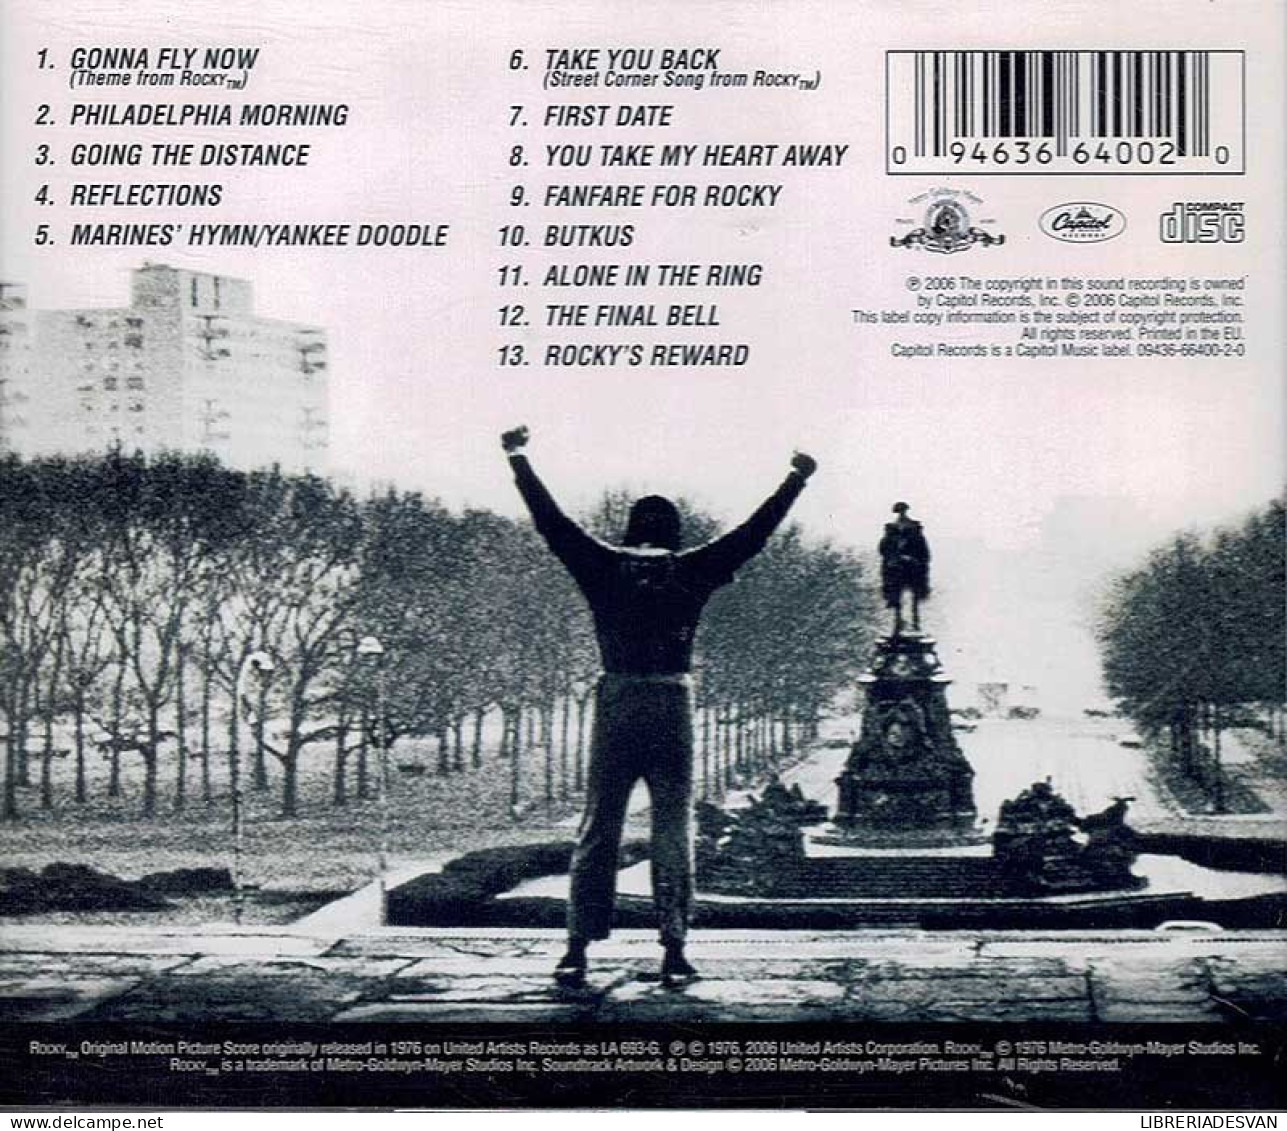 Bill Conti - Rocky (Original Motion Picture Score). Special 30th Anniversary Edition. CD - Filmmuziek